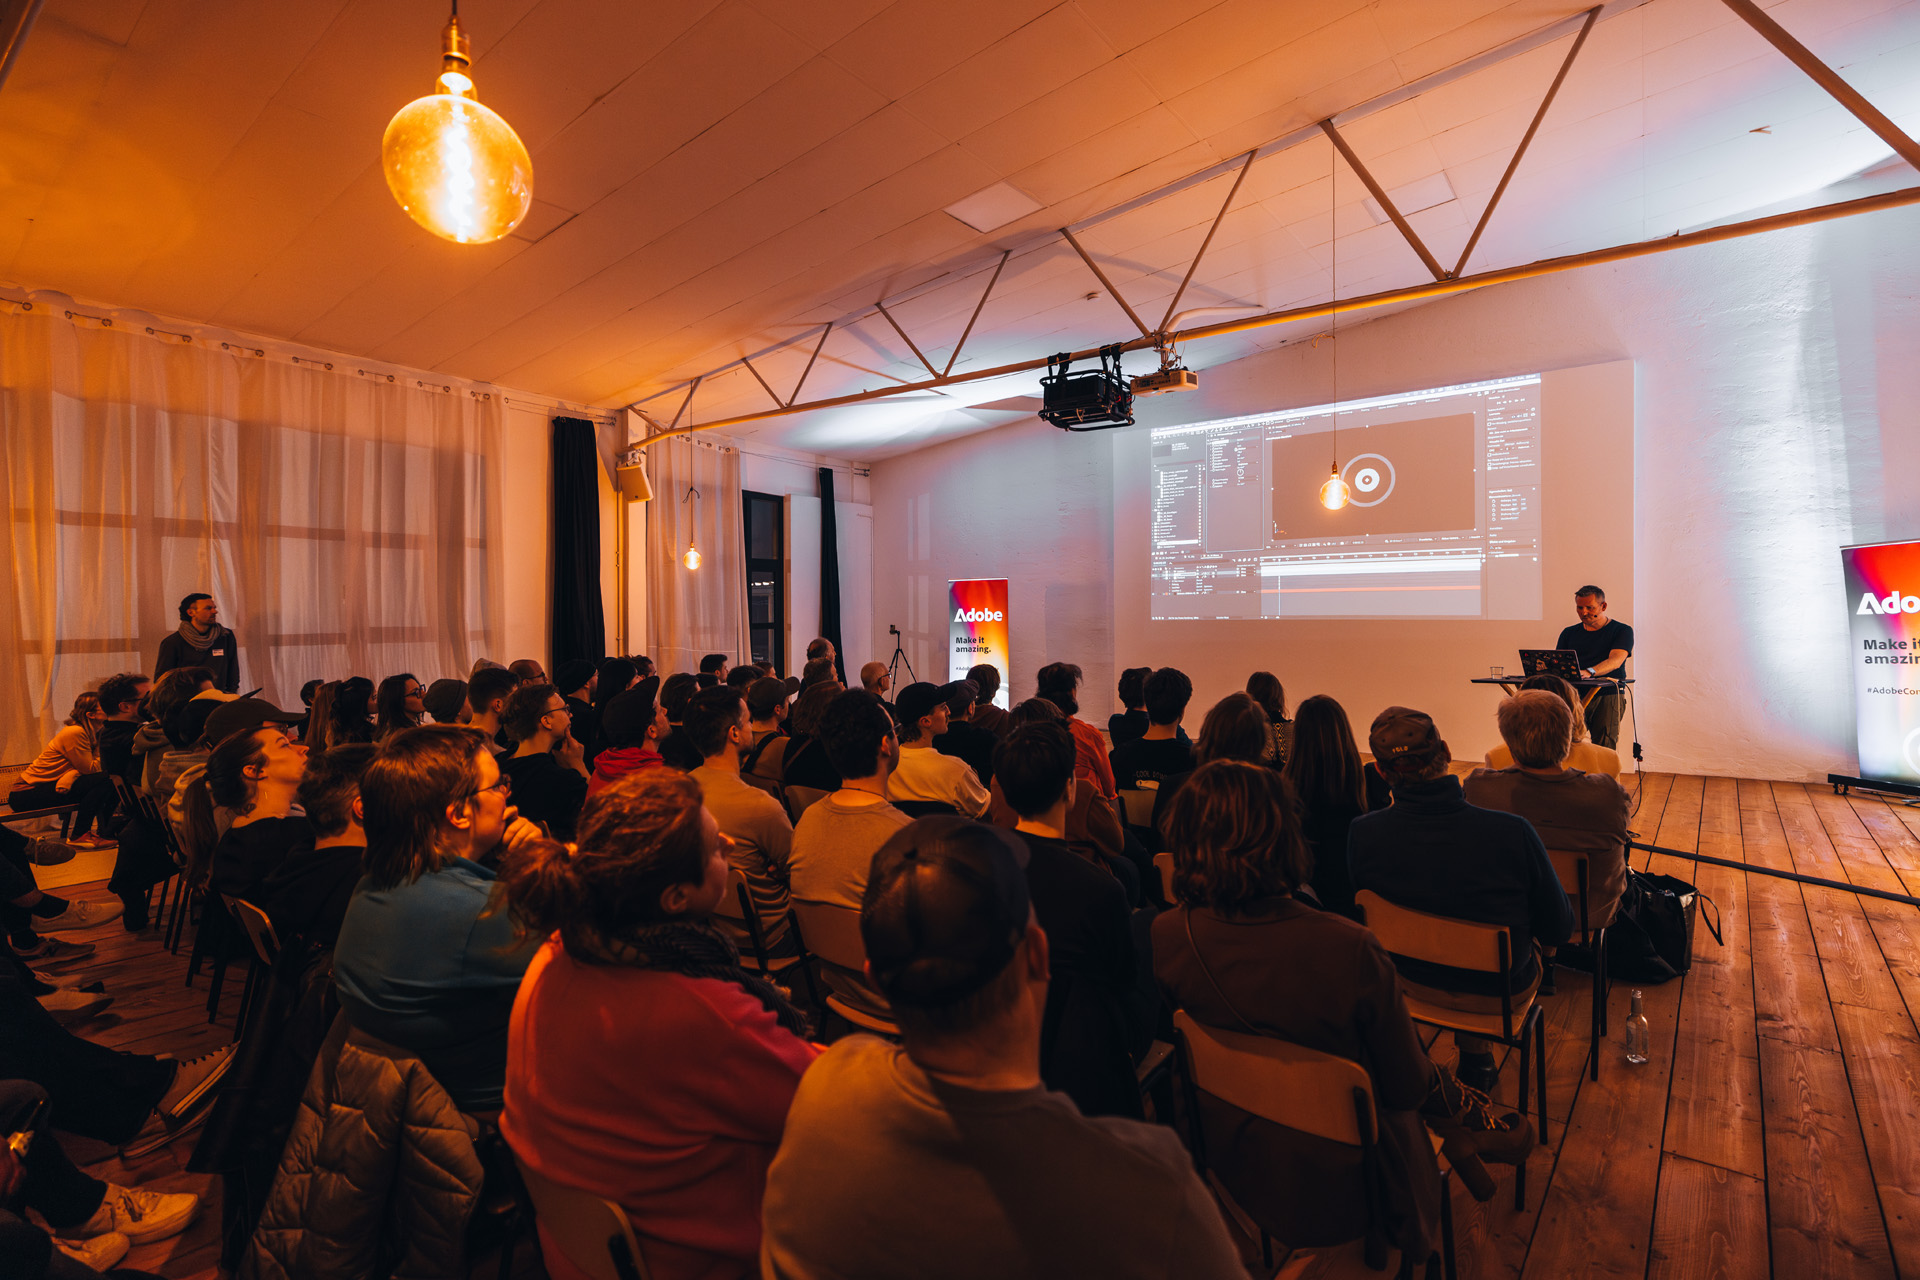 Besucher auf einer Veranstaltung von Adobe in München